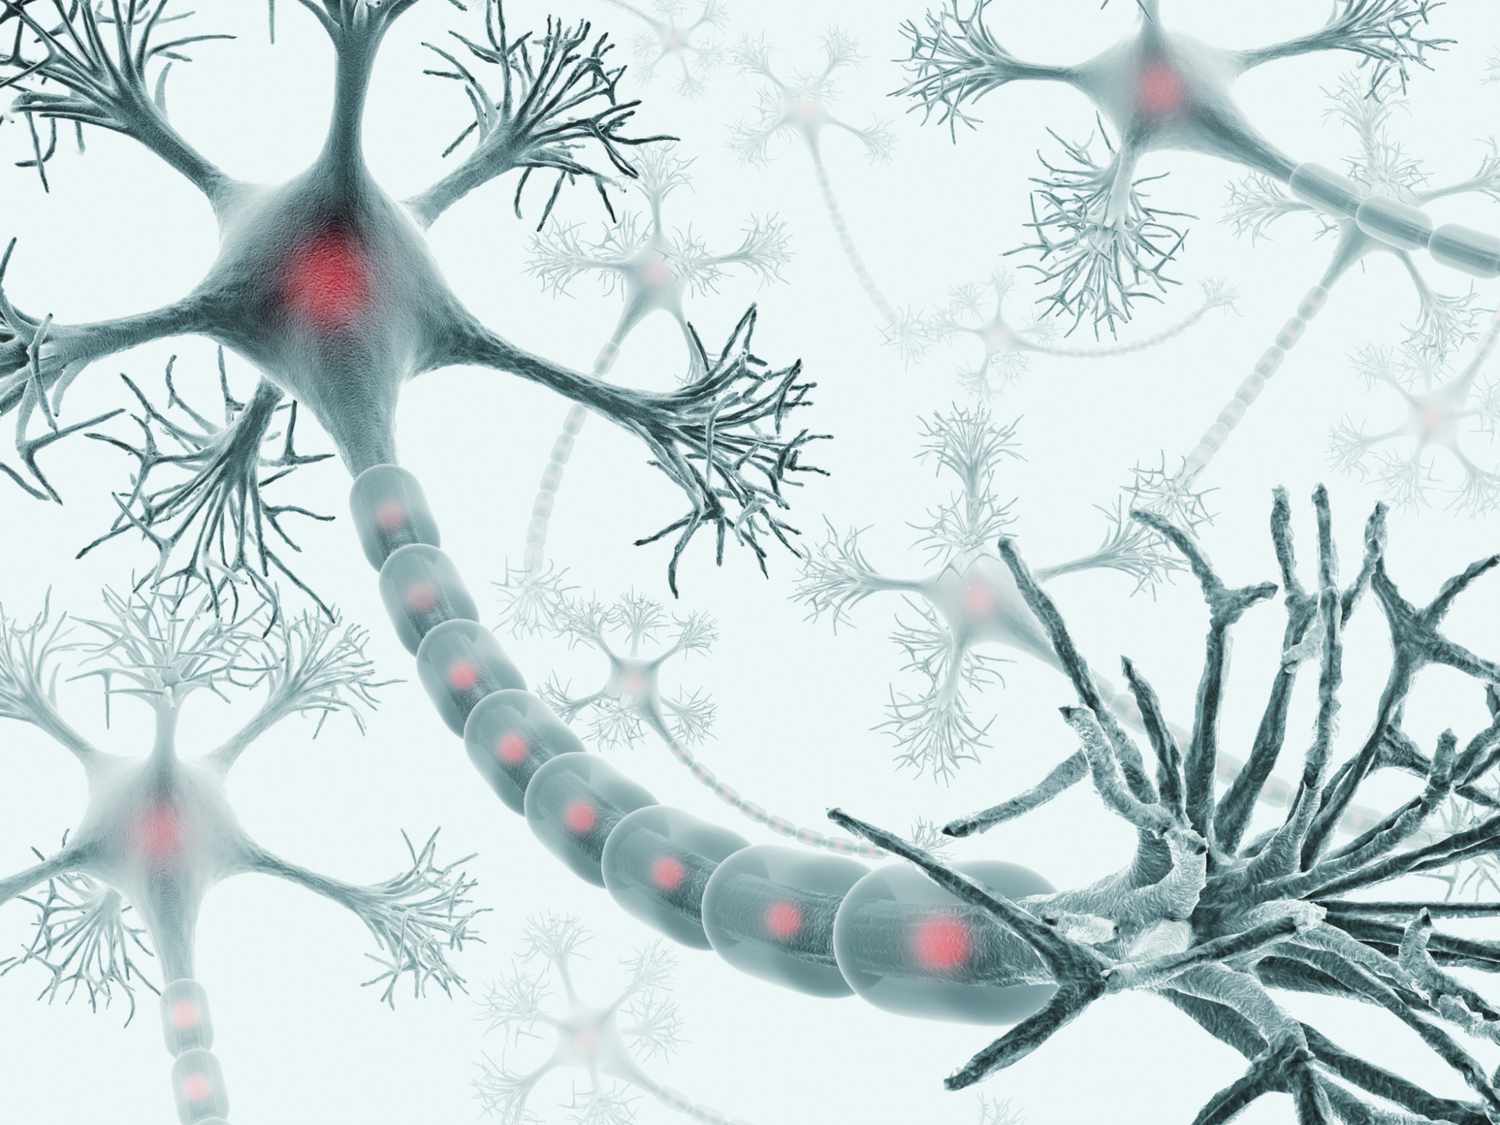  Làm cách nào để não bộ sản xuất nhiều tế bào thần kinh hơn?